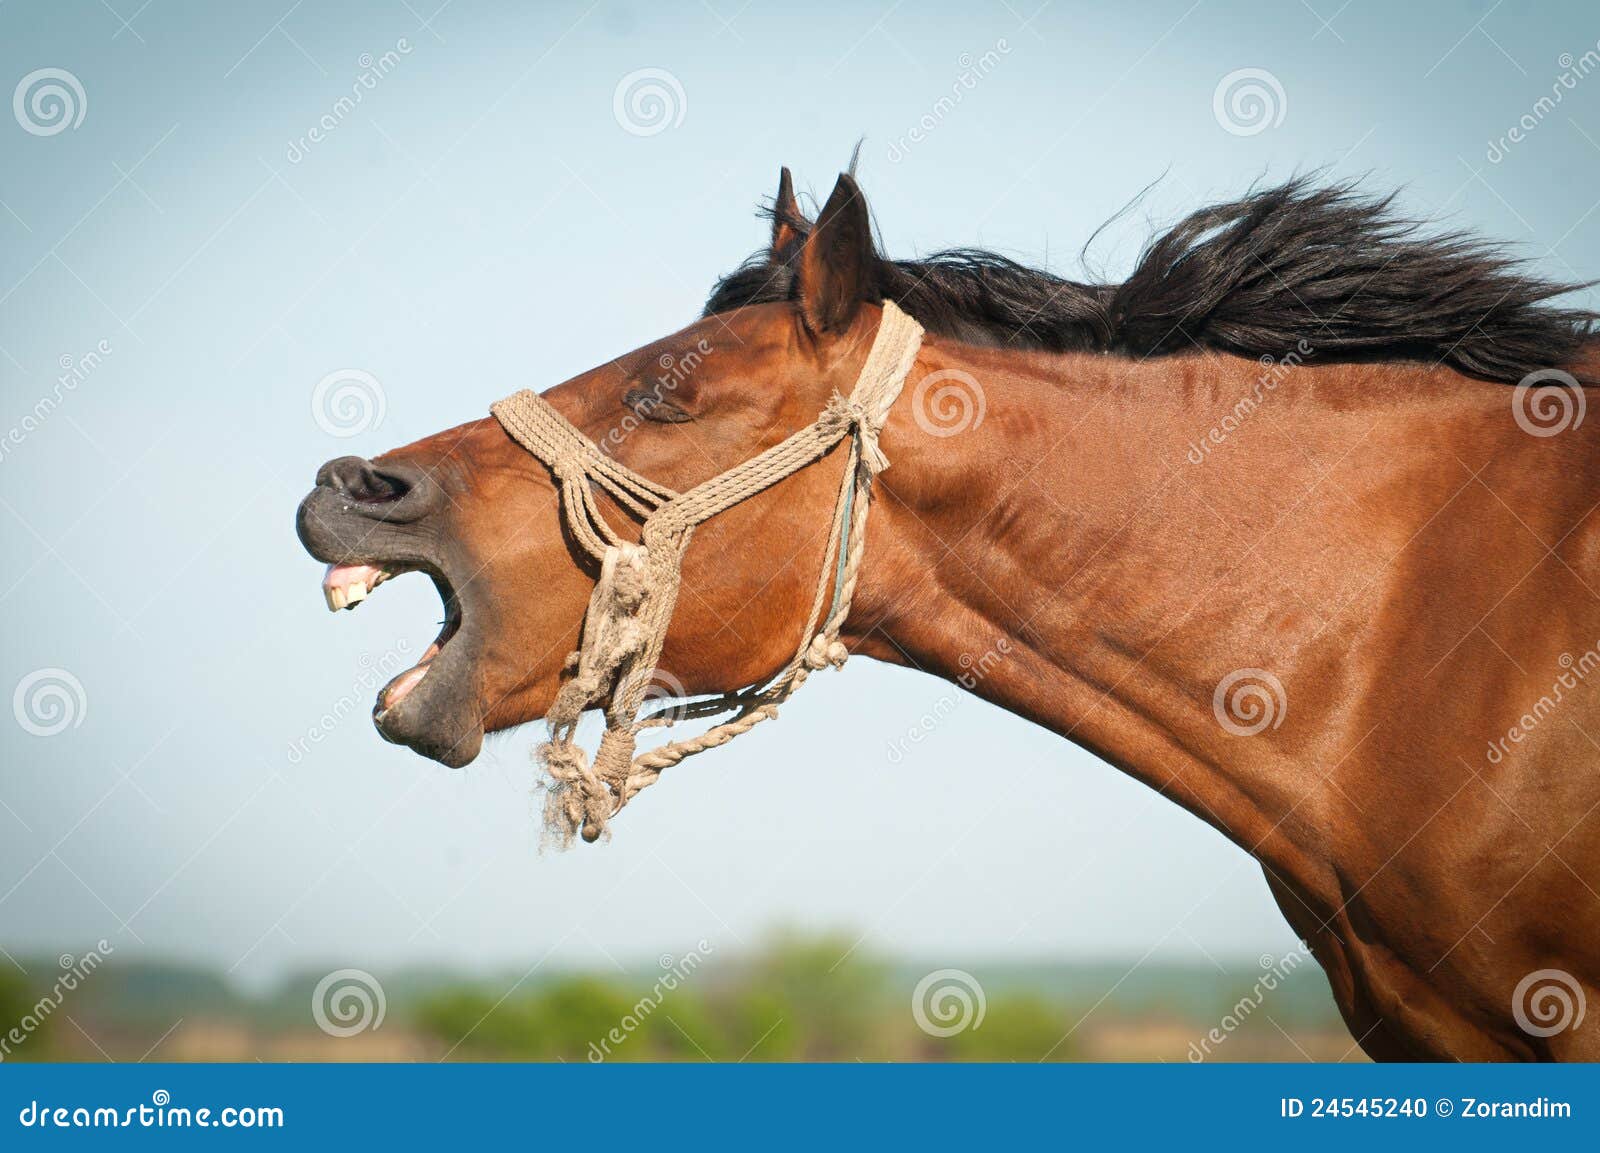 engualzinho 👍🏿 #DiaDasMães #fy #engracado #fyp #cavalo #horse